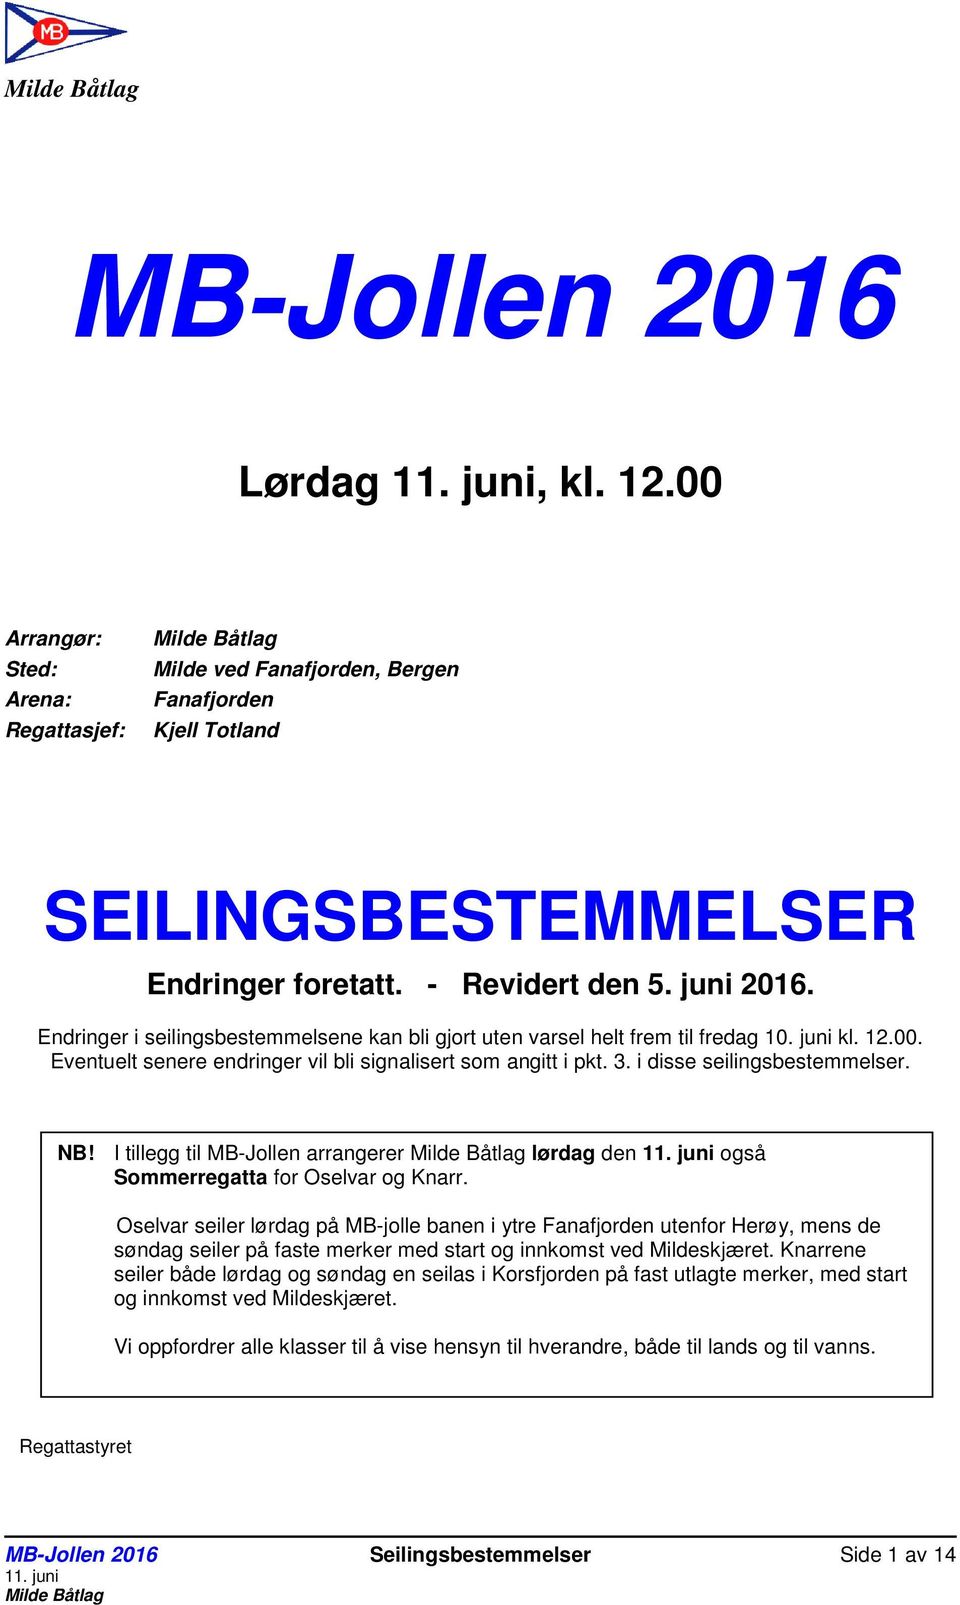 NB! I tillegg til MB-Jollen arrangerer lørdag den også Sommerregatta for Oselvar og Knarr.